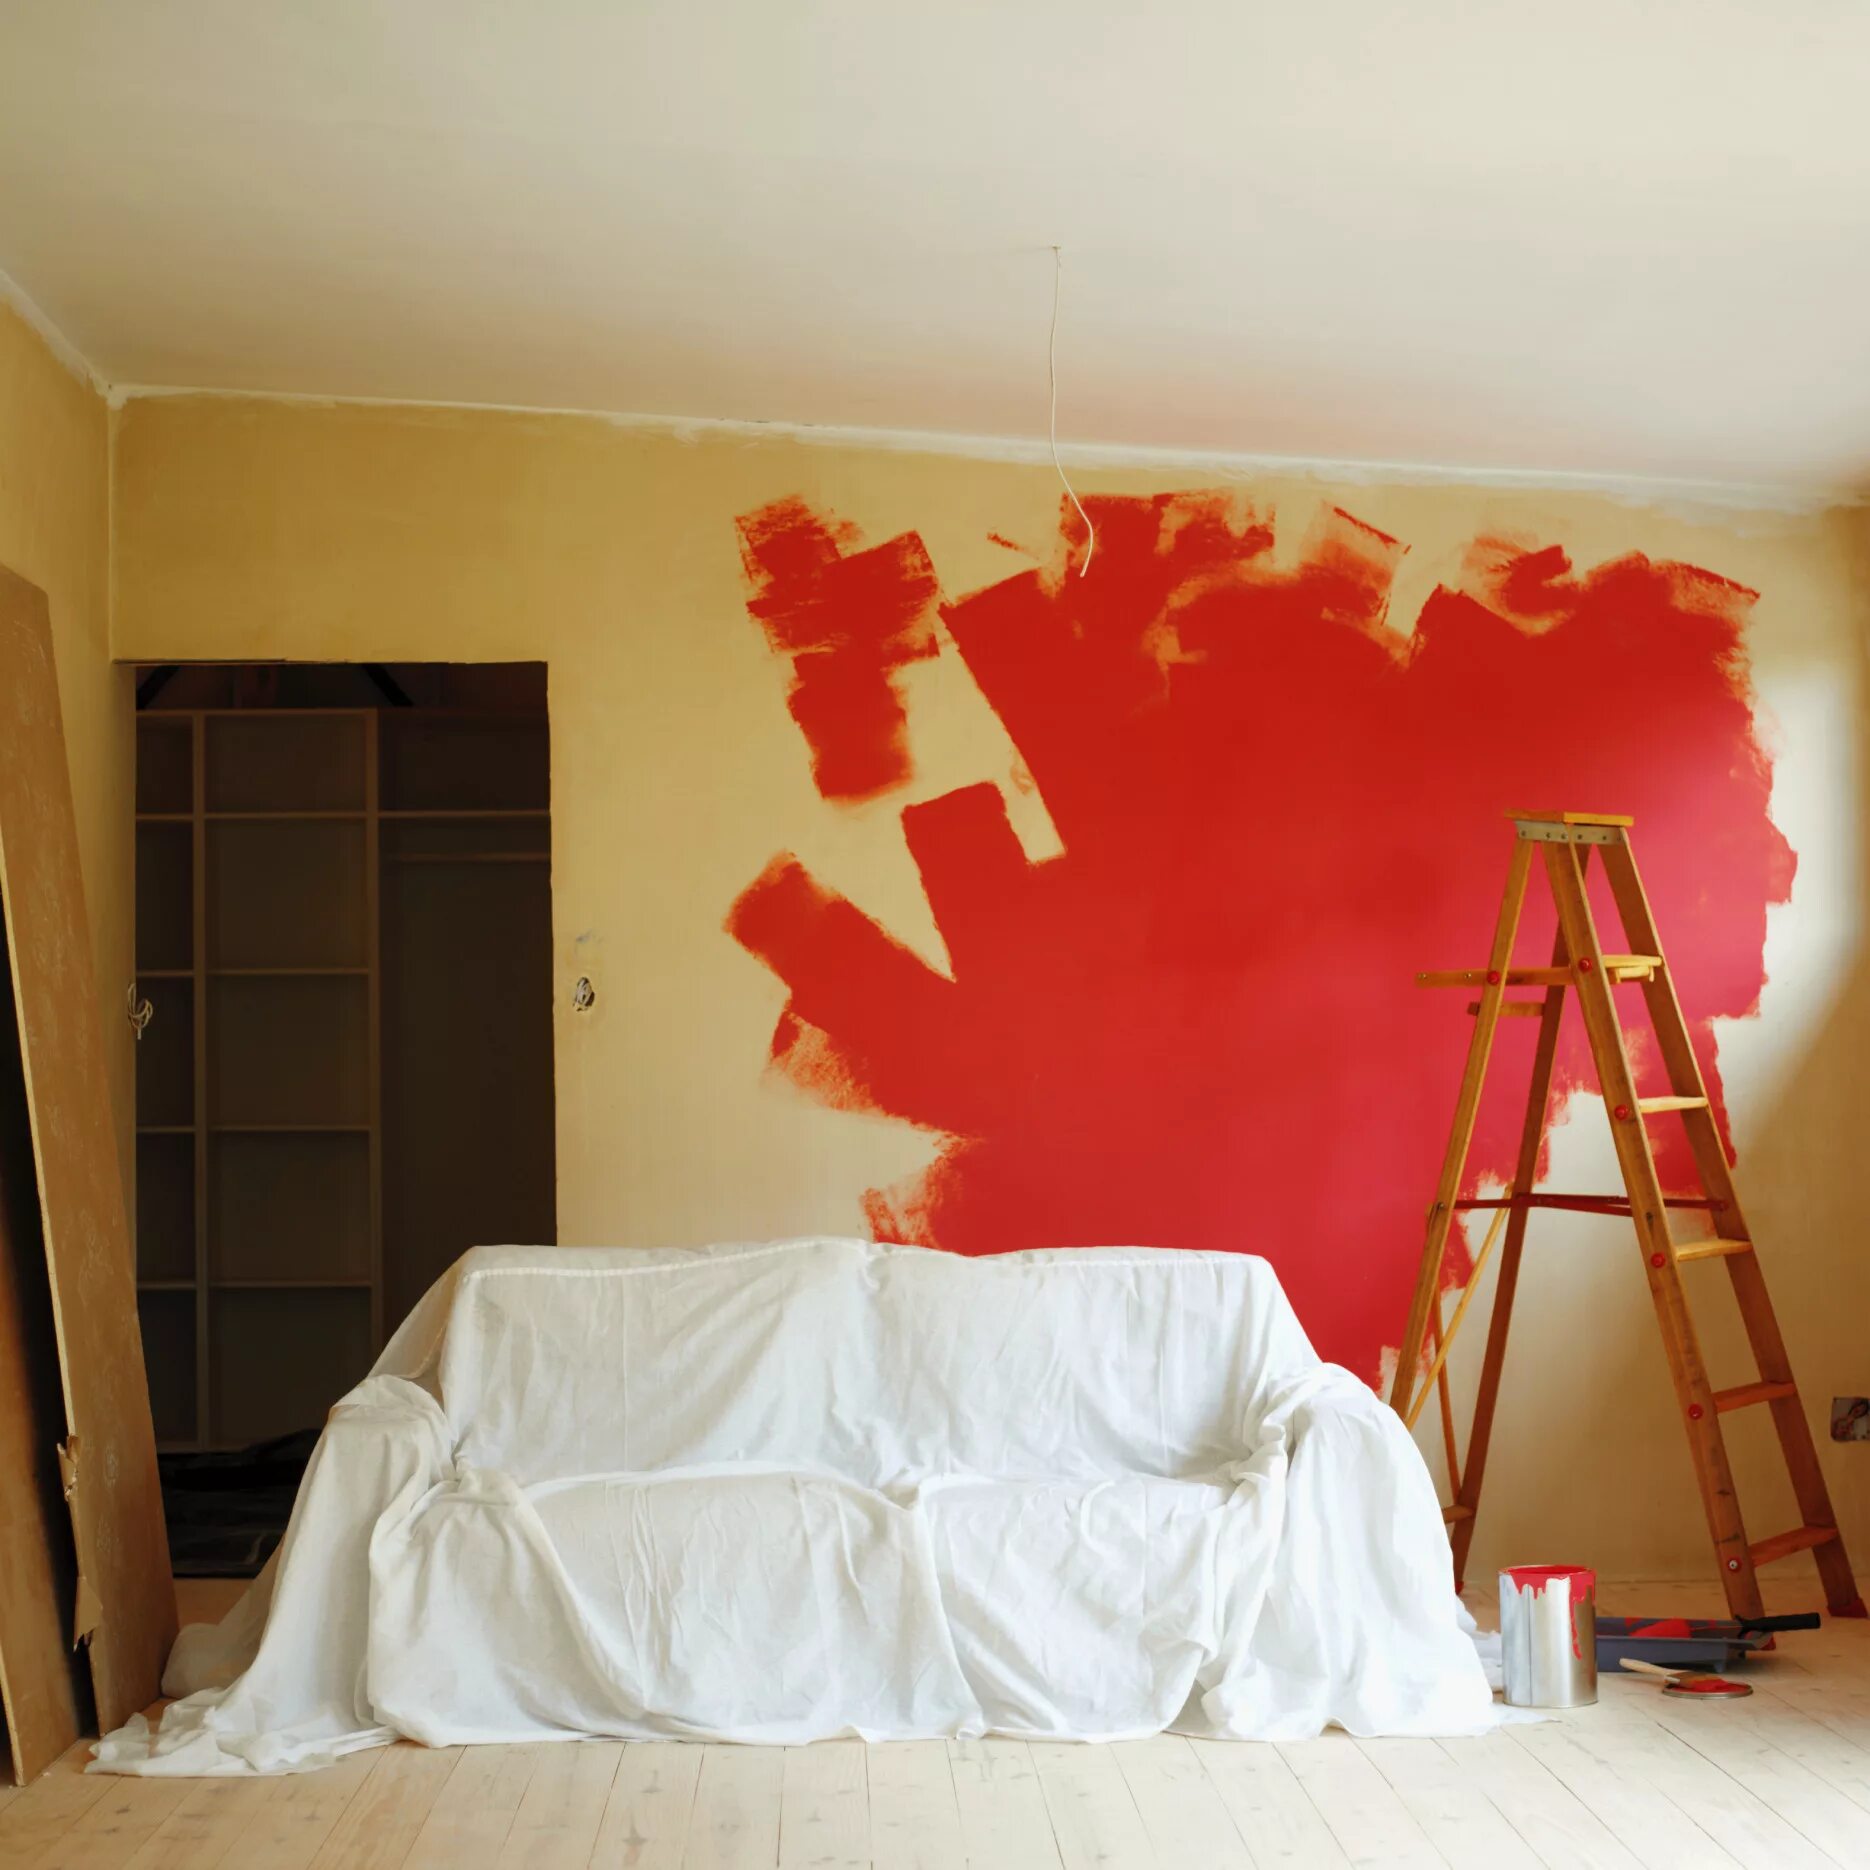 Ремонт ди. Крашеные стены в квартире. Крашенные стены в комнате. Покрашенные стены в квартире. Покраска обоев.